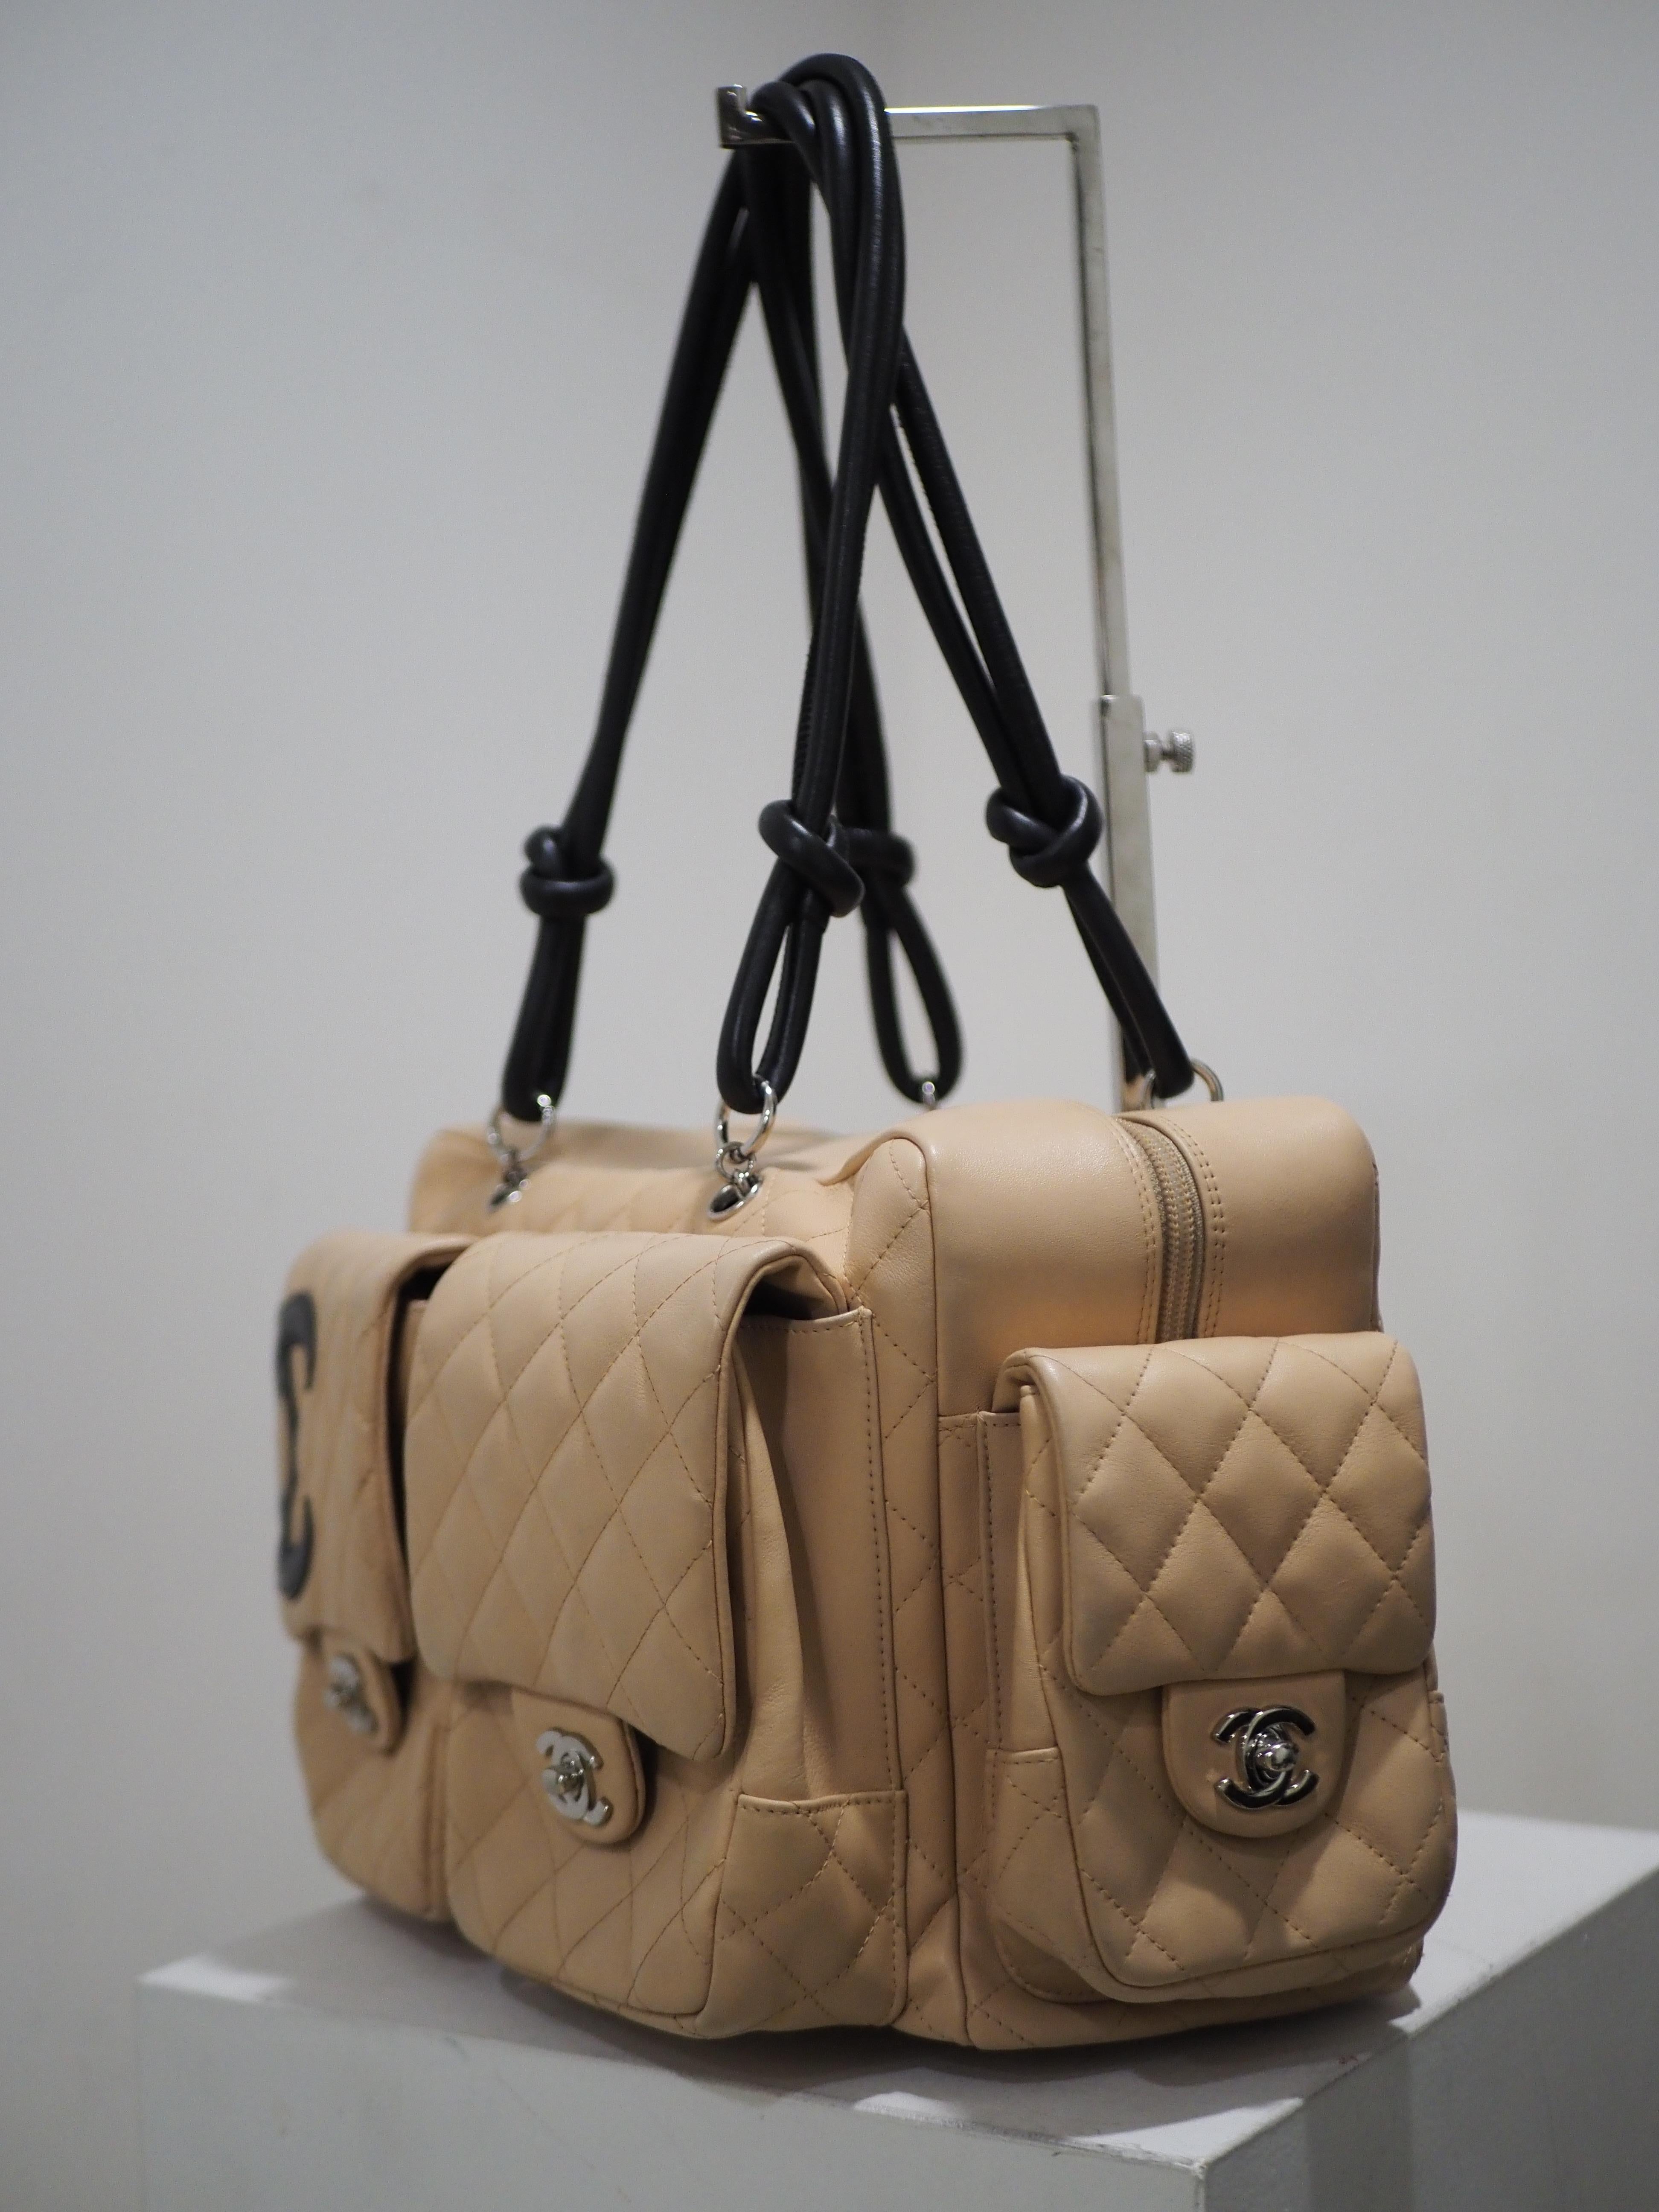 Chanel CC camel and black leather handbag shoulder bag 3